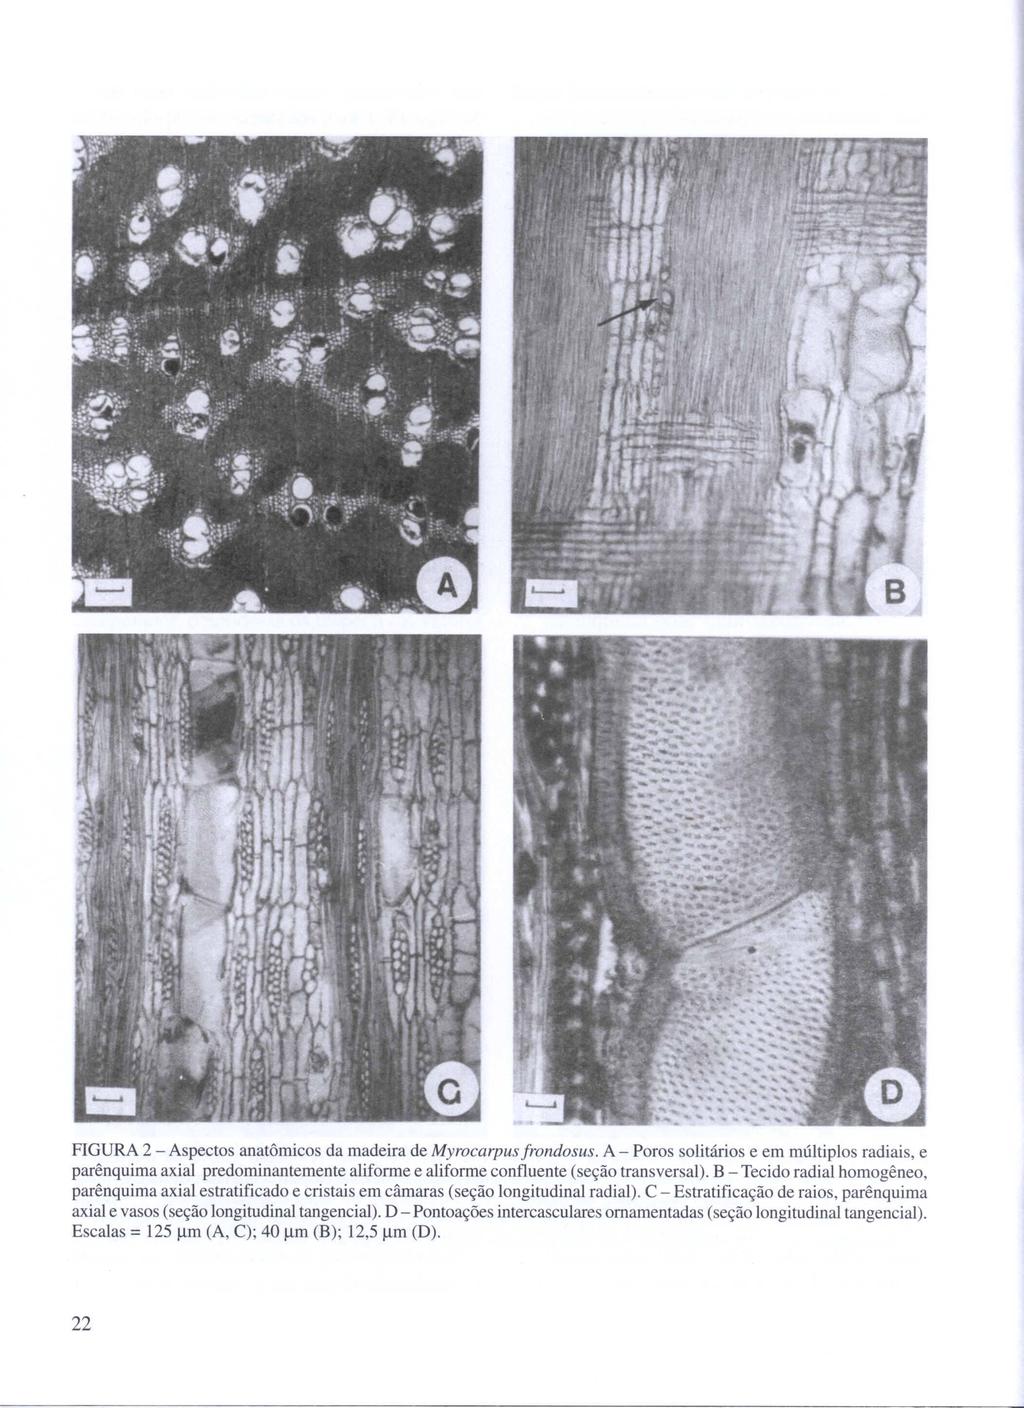 FIGURA 2 - Aspectos anatômicos da madeira de Myrocarpus frondosus. A - Poros solitários e em múltiplos radiais, e parênquima axial predominantemente aliforme e aliforme confluente (seção transversal).